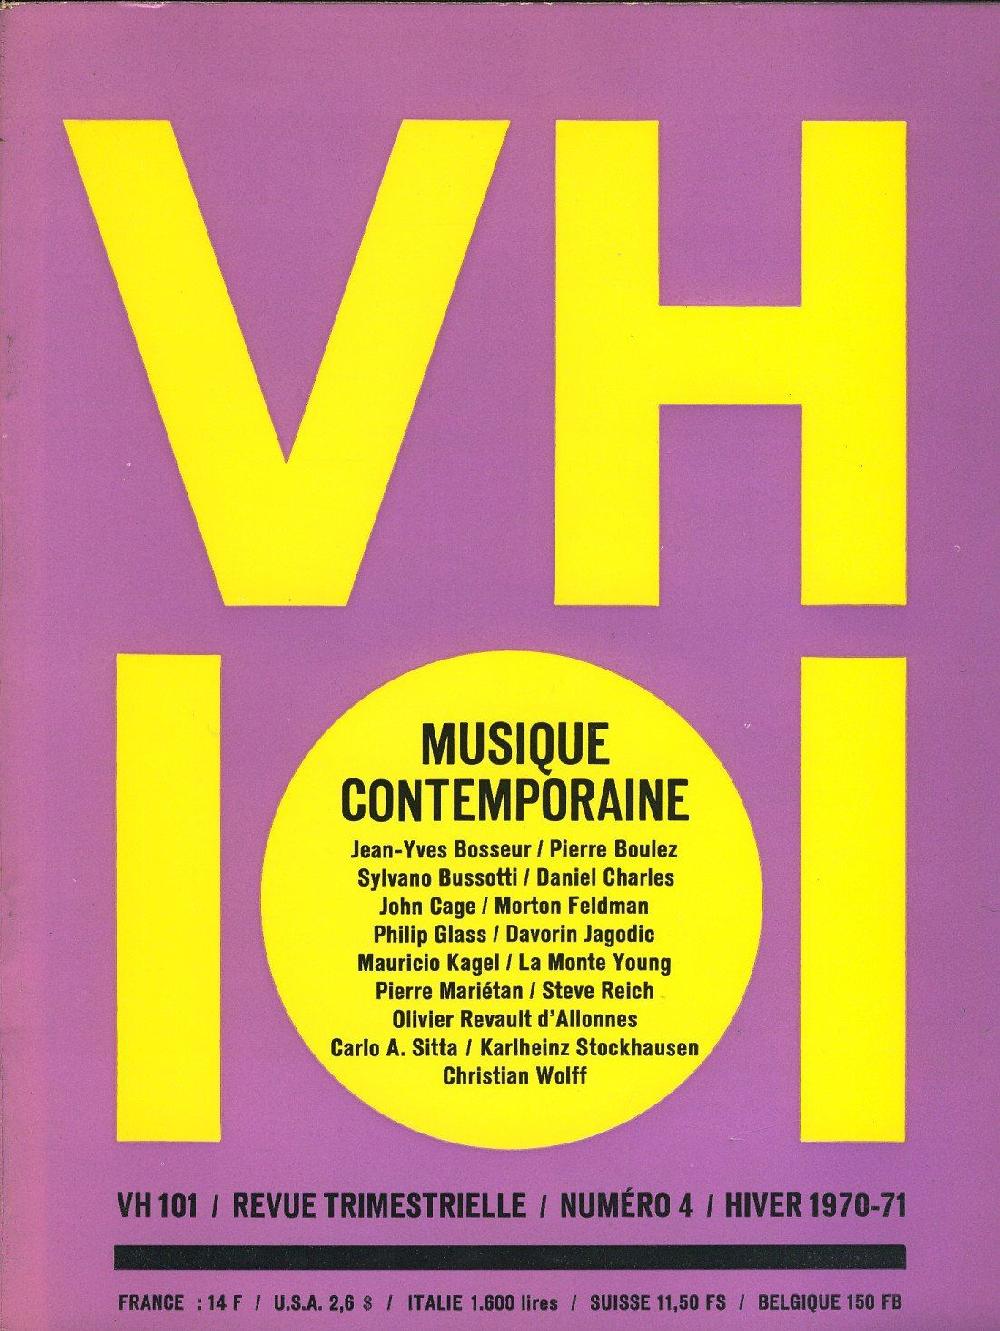 VH101 numéro 4 - MUSIQUE CONTEMPORAINE